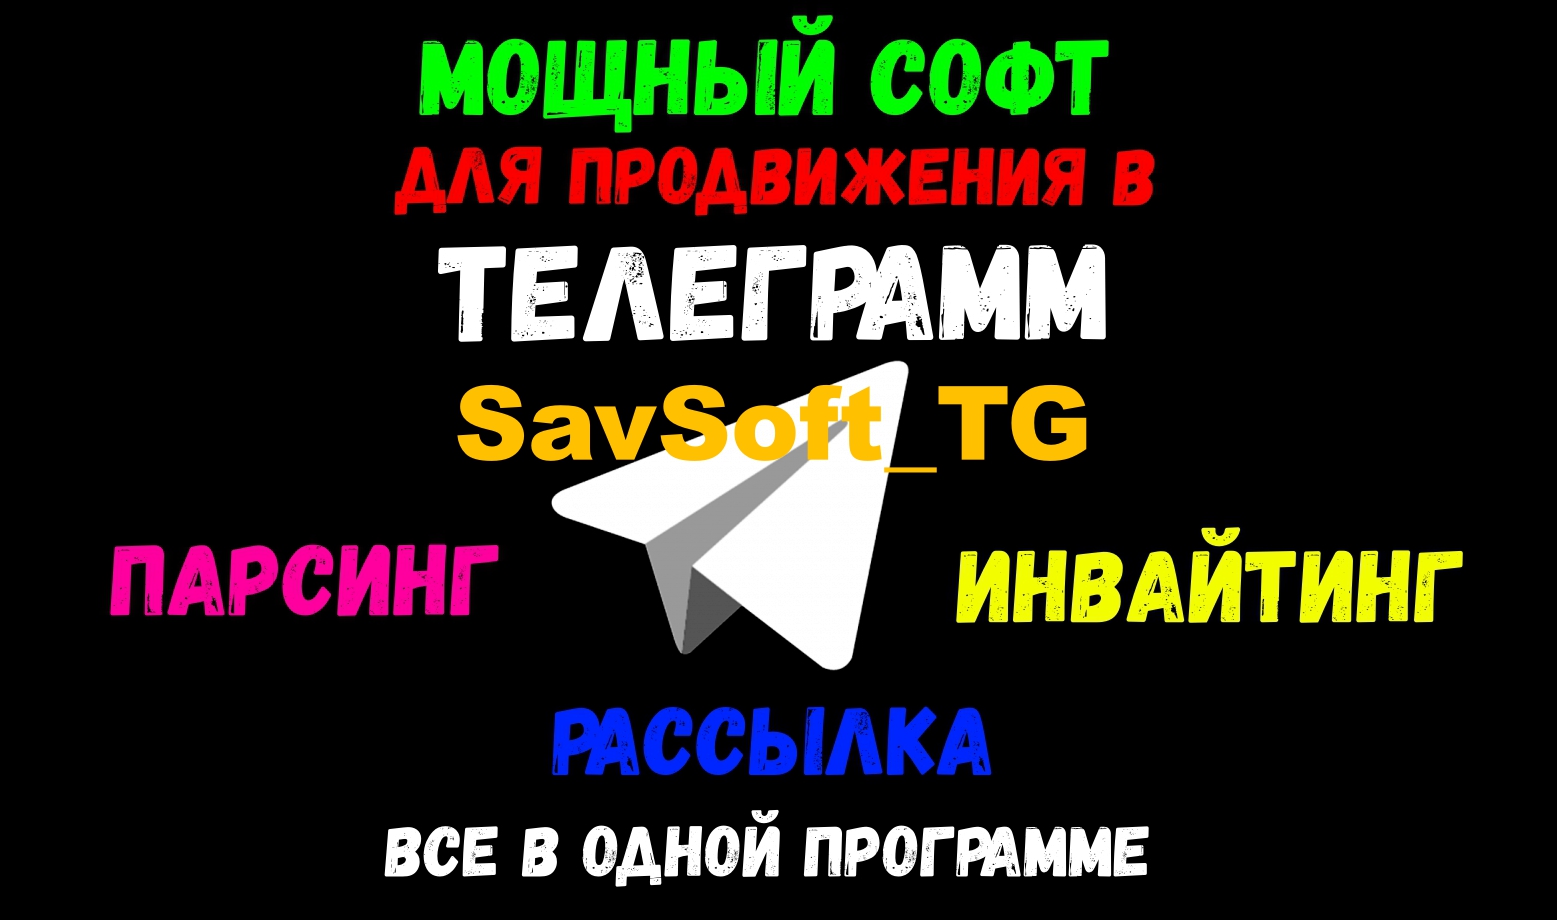 SavSoft_TG  Описание и видео функционал программы.